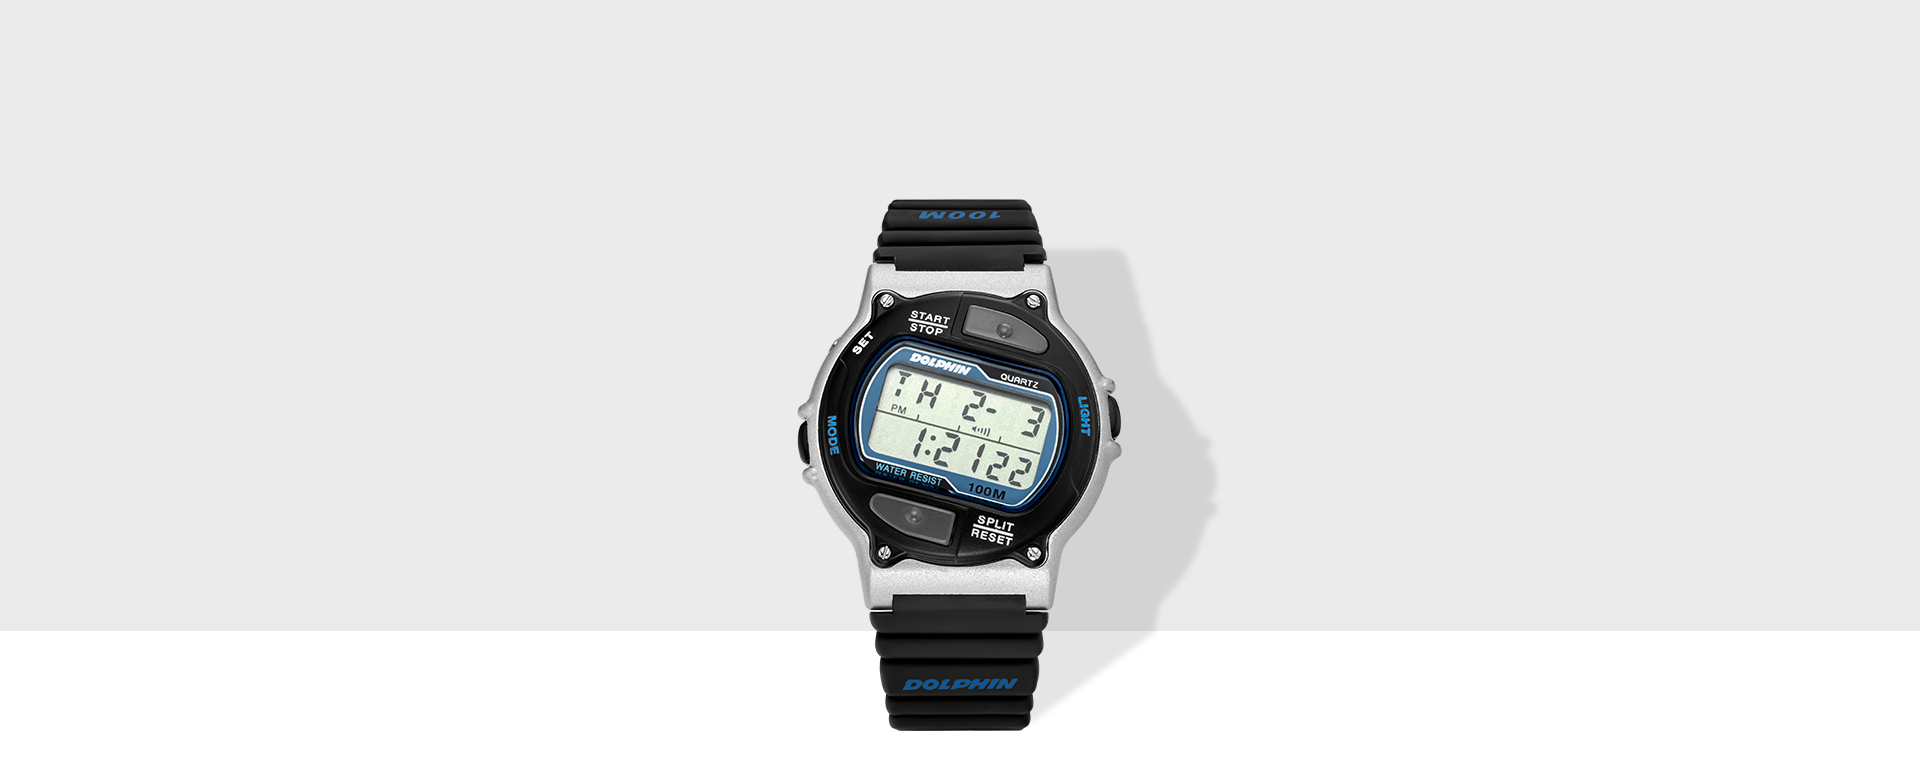 돌핀 469 디지털 손목시계 실버블루